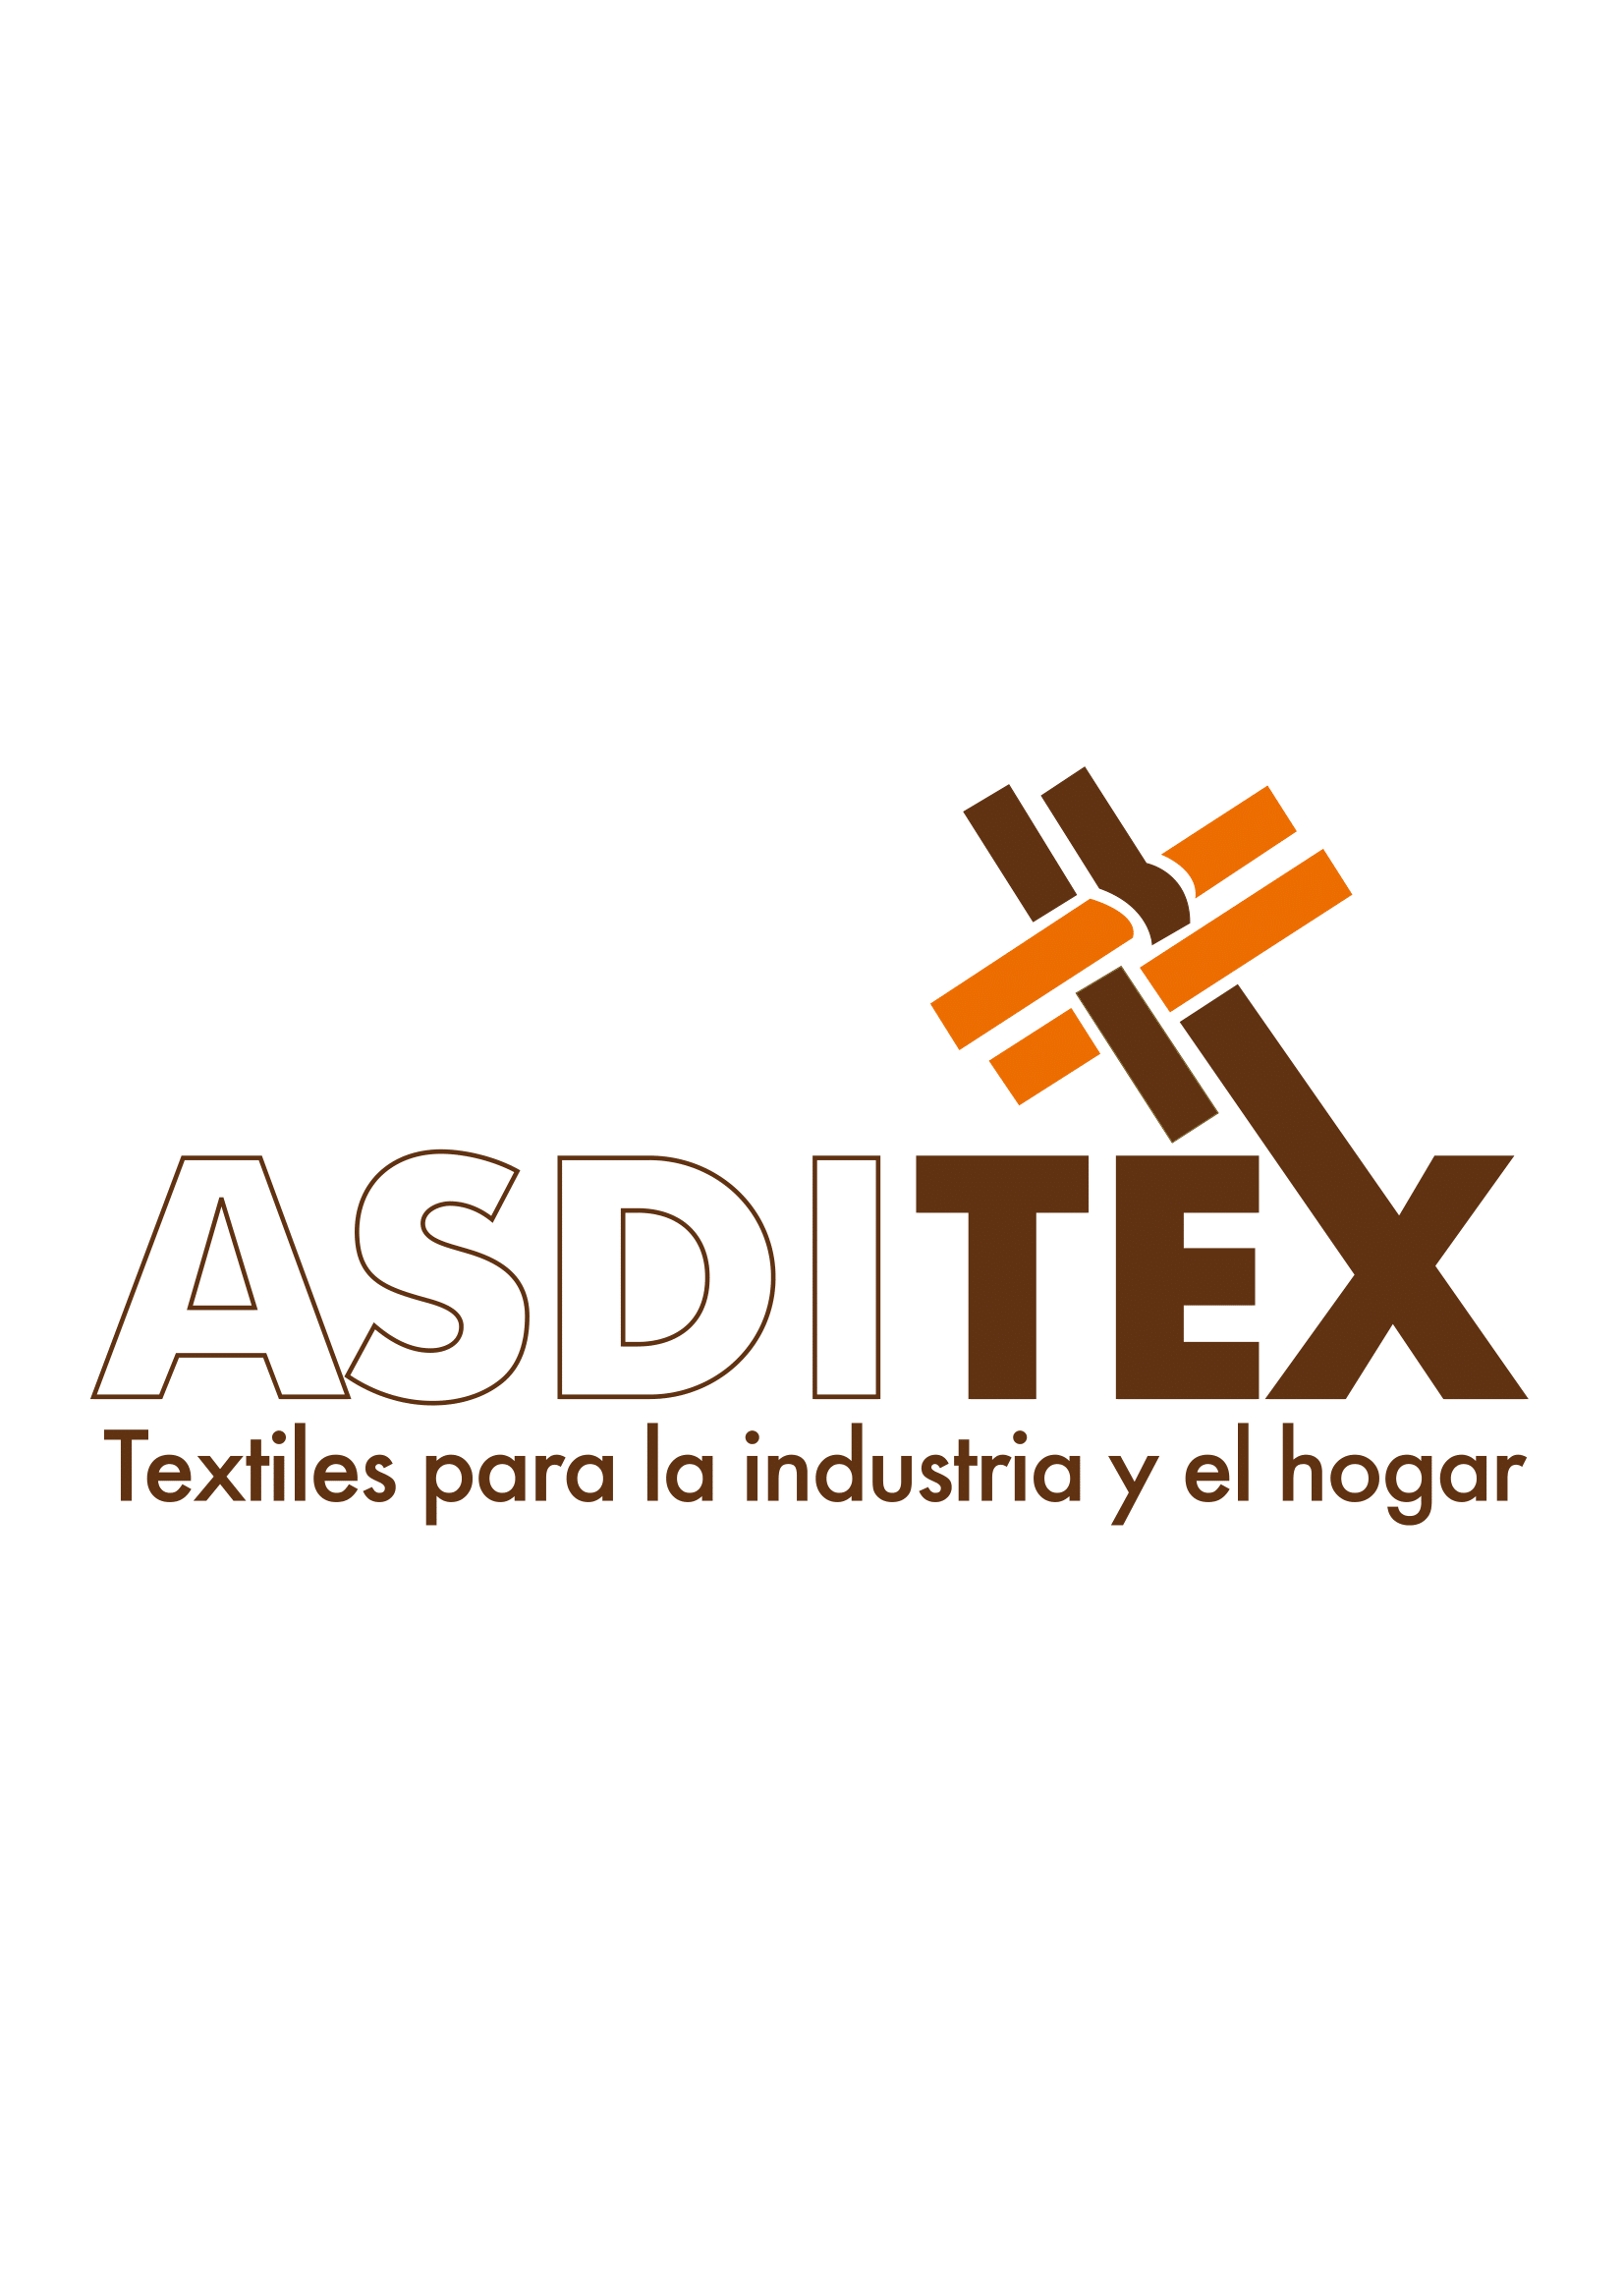 ASDITEX